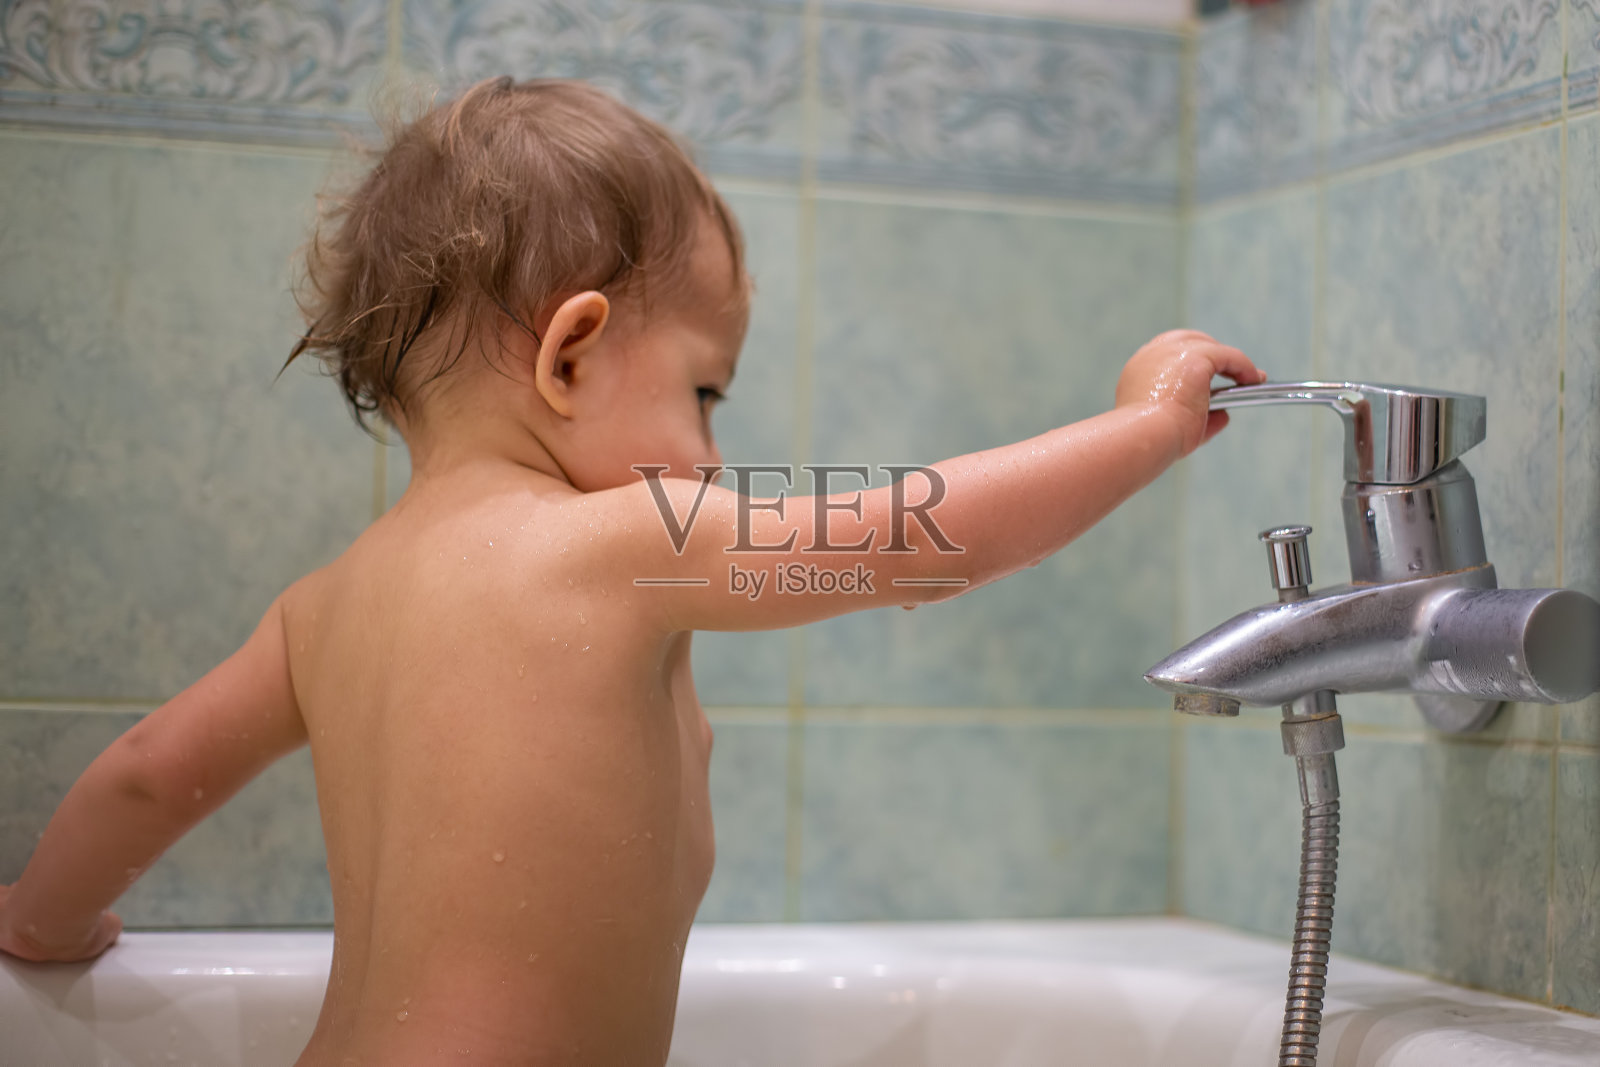 一个可爱的小孩，在洗澡的时候，玩着水龙头，开关它。以模糊的绿色浴室为背景照片摄影图片